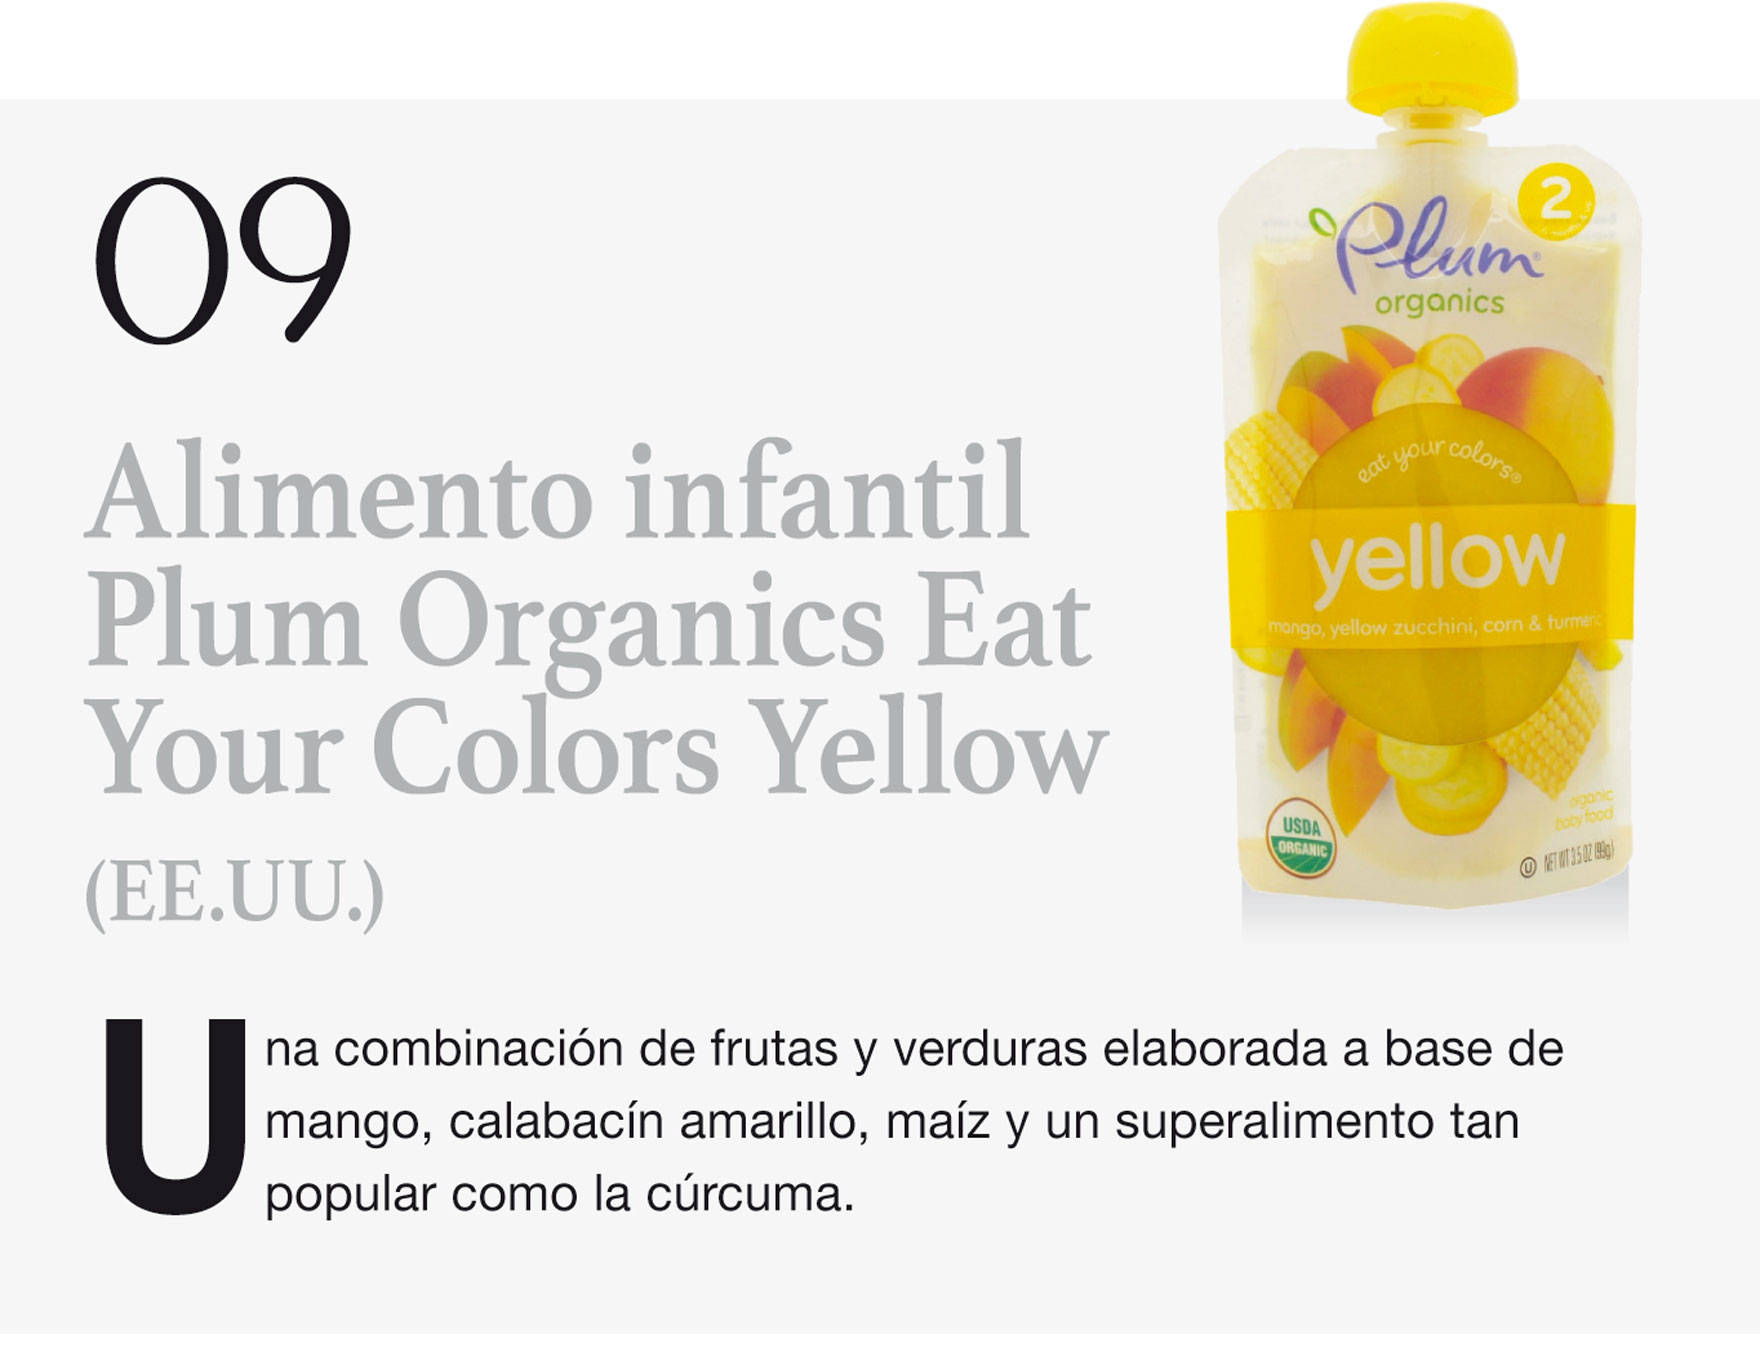 Alimento infantil Plum Organics Eat Your Colors Yellow